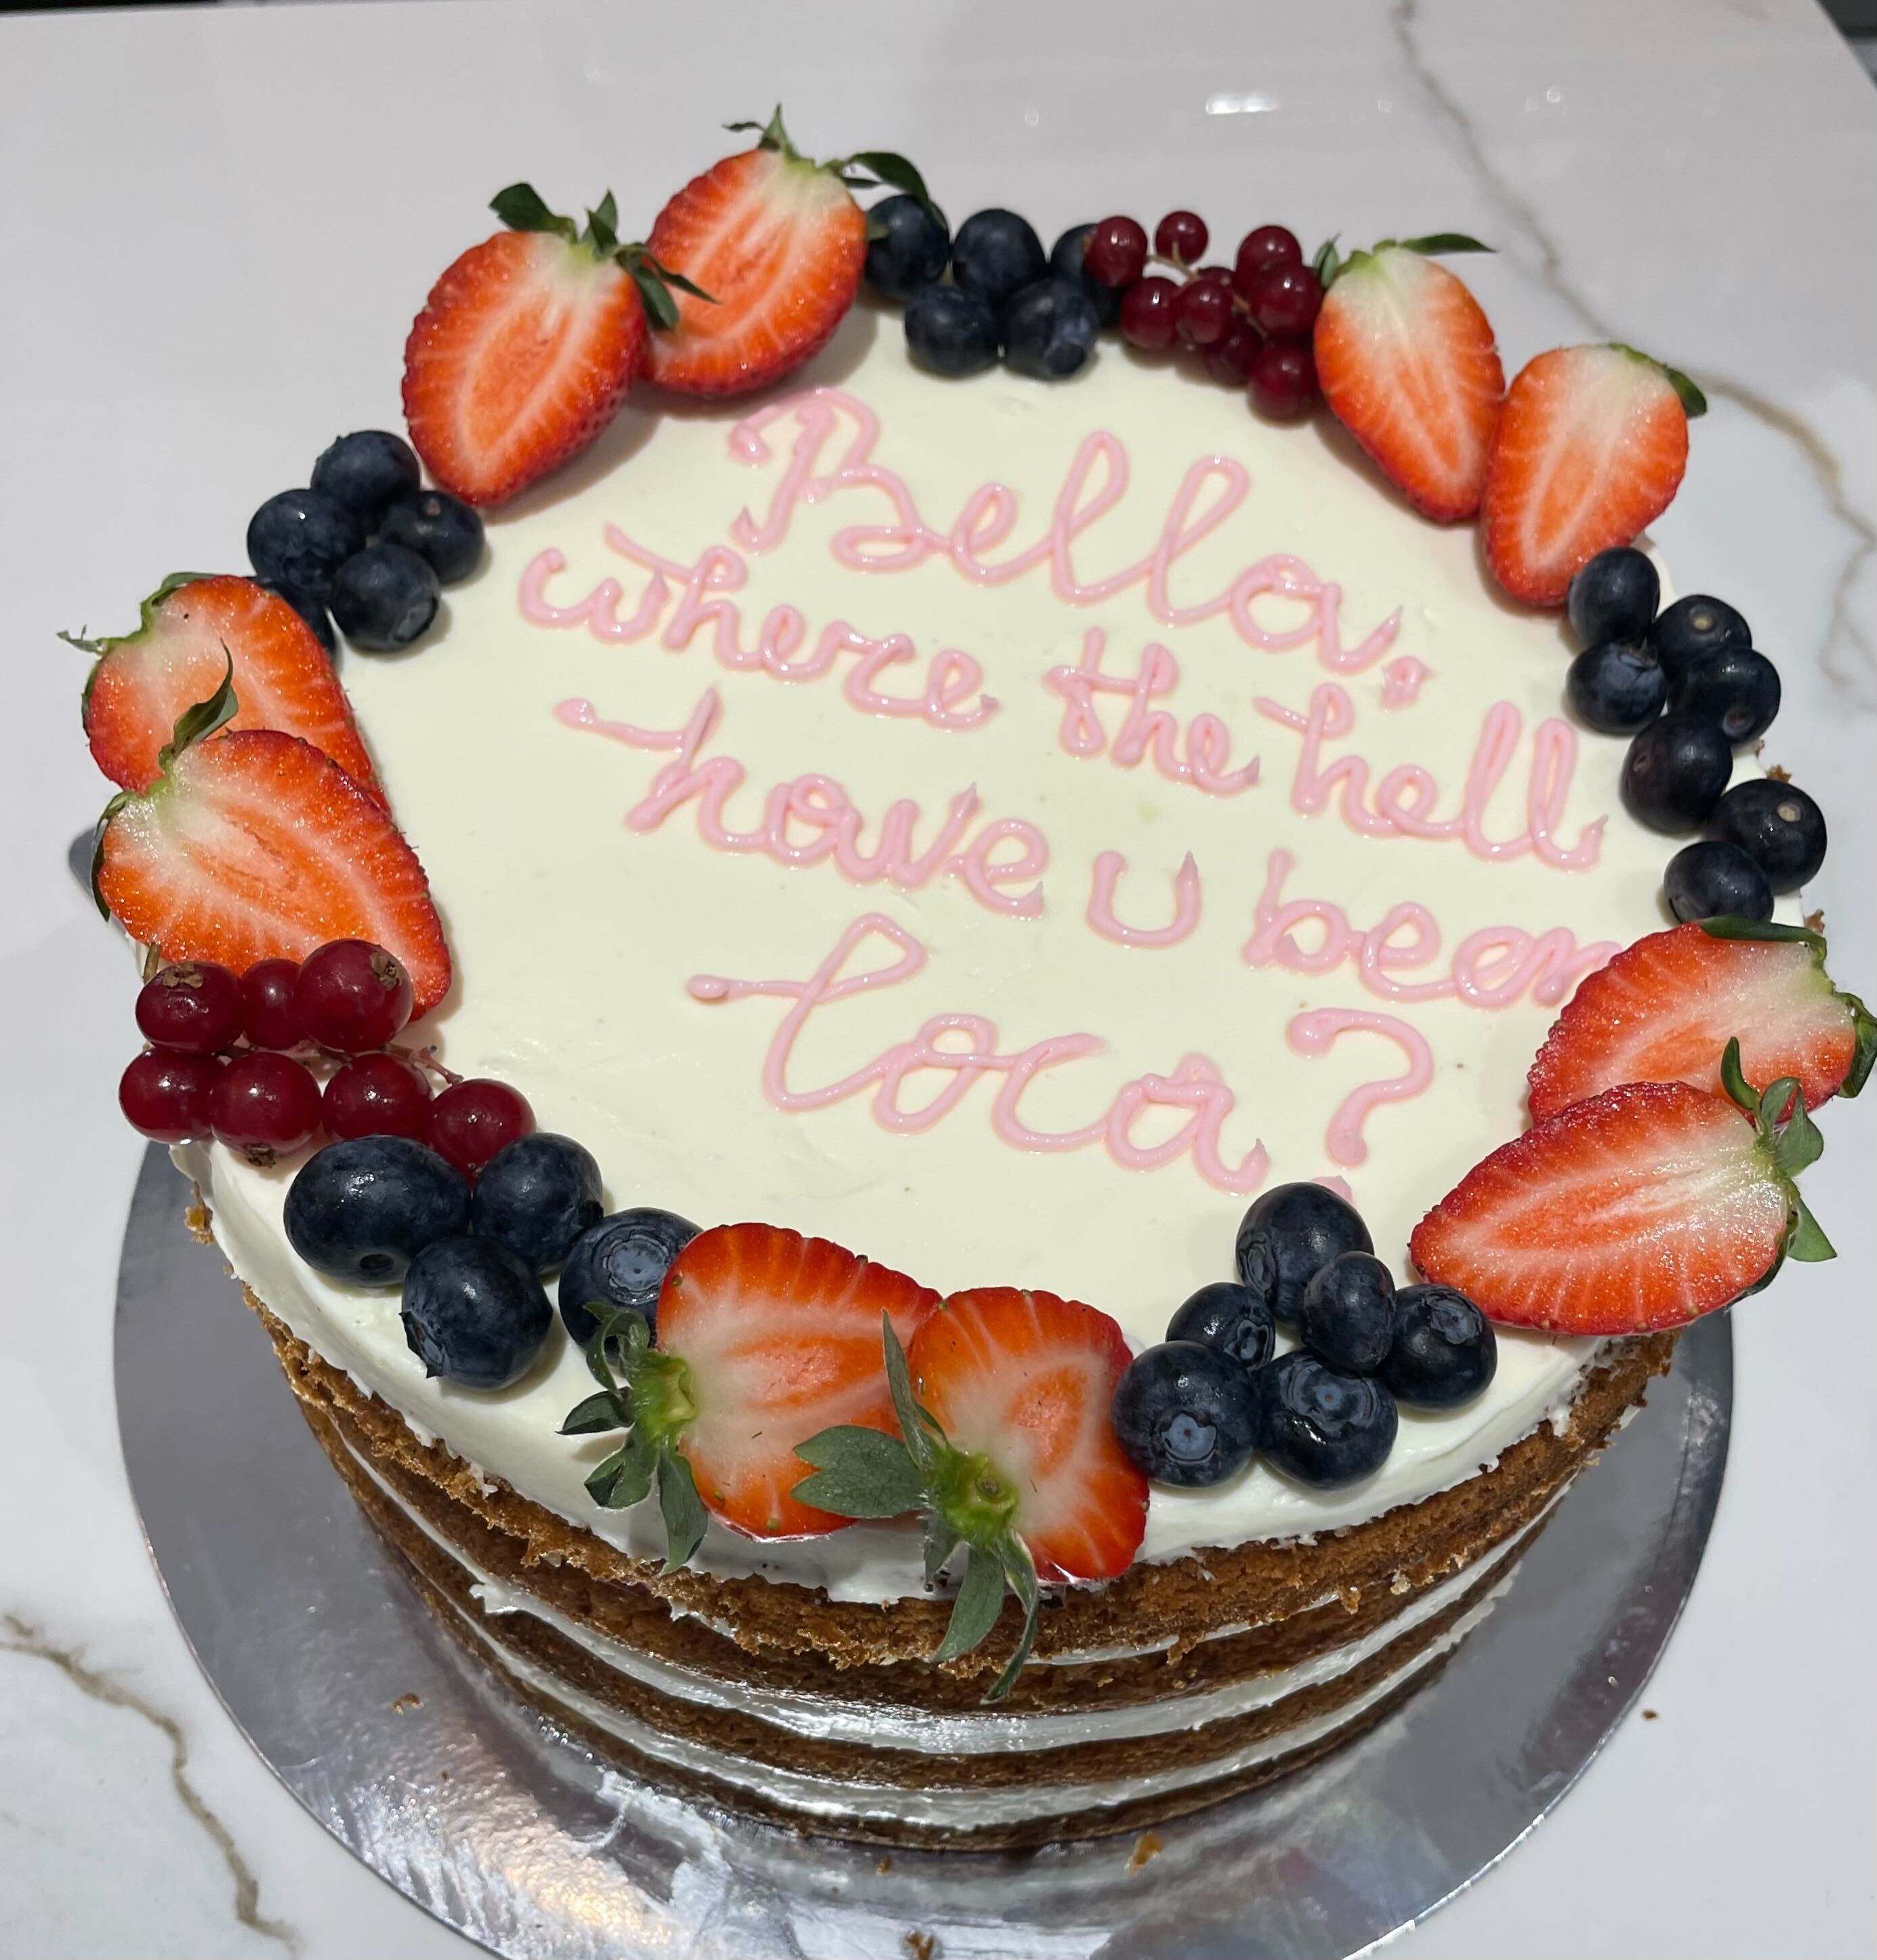 Торта за рожден ден от сладкарница "Алтруист", ул. Екзарх Йосиф